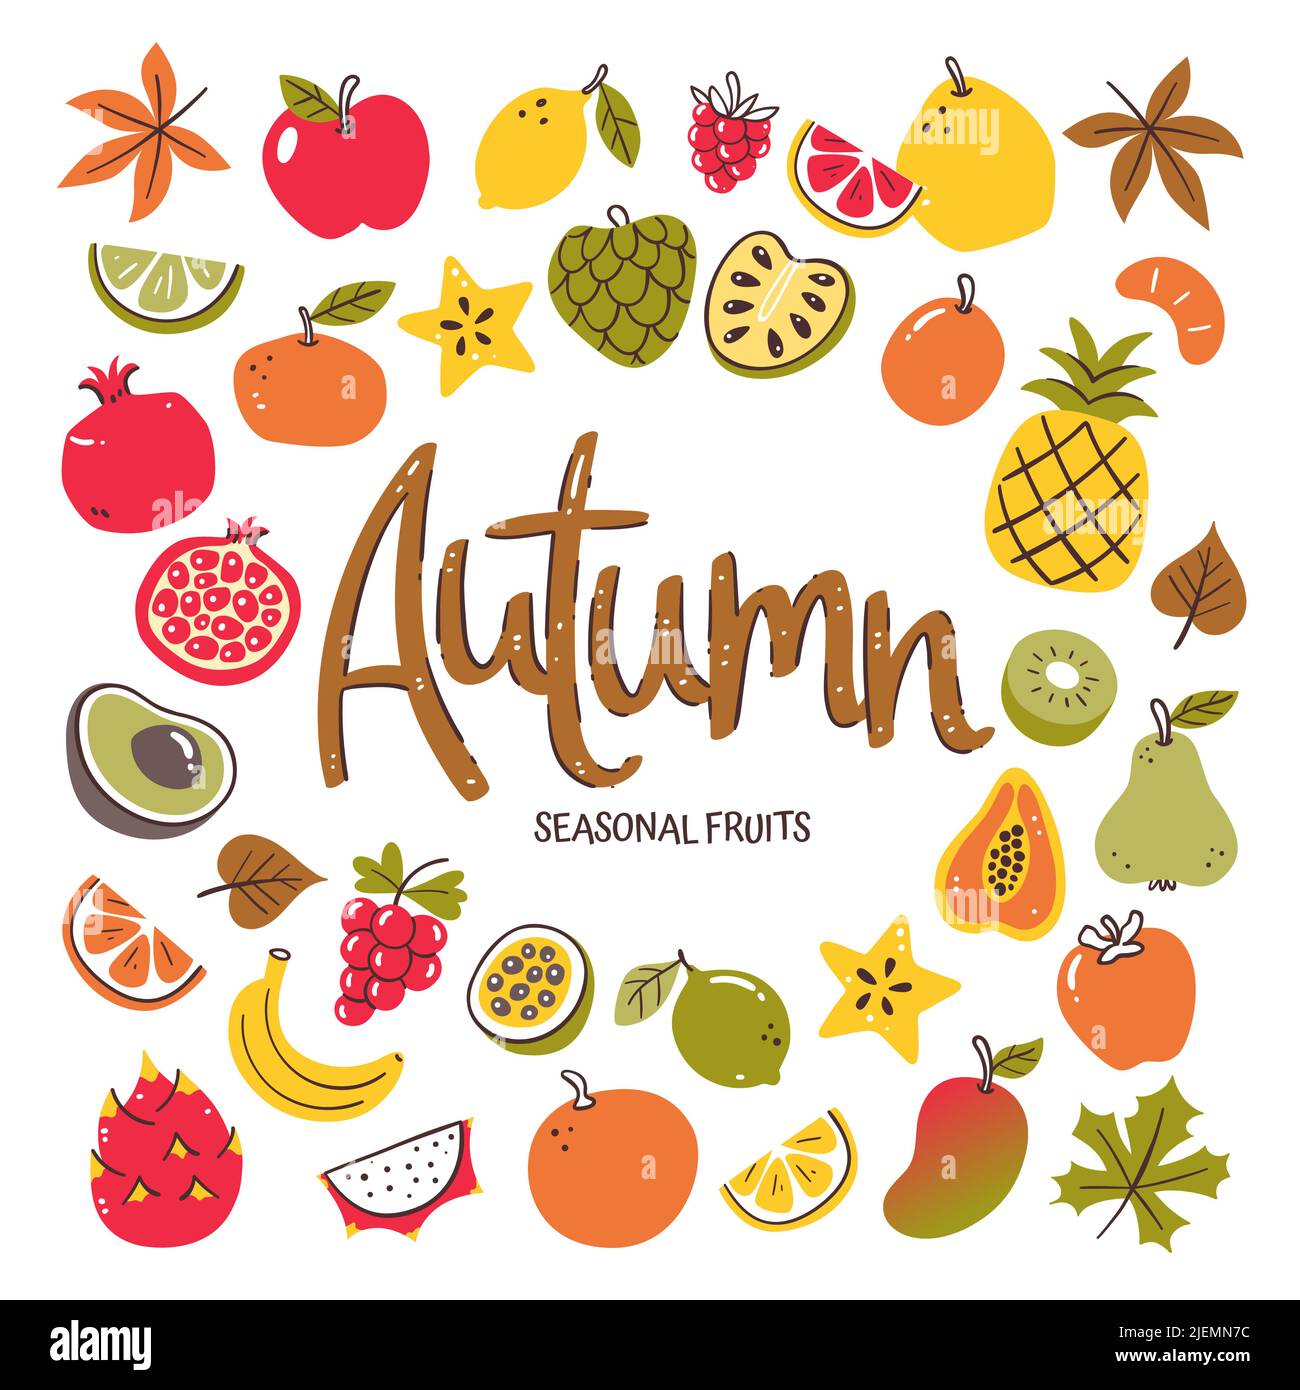 Frutta di stagione di fondo. Composizione di frutta autunnale composta da icone vettoriali colorate disegnate a mano, isolate su sfondo bianco. Illustrazione Vettoriale